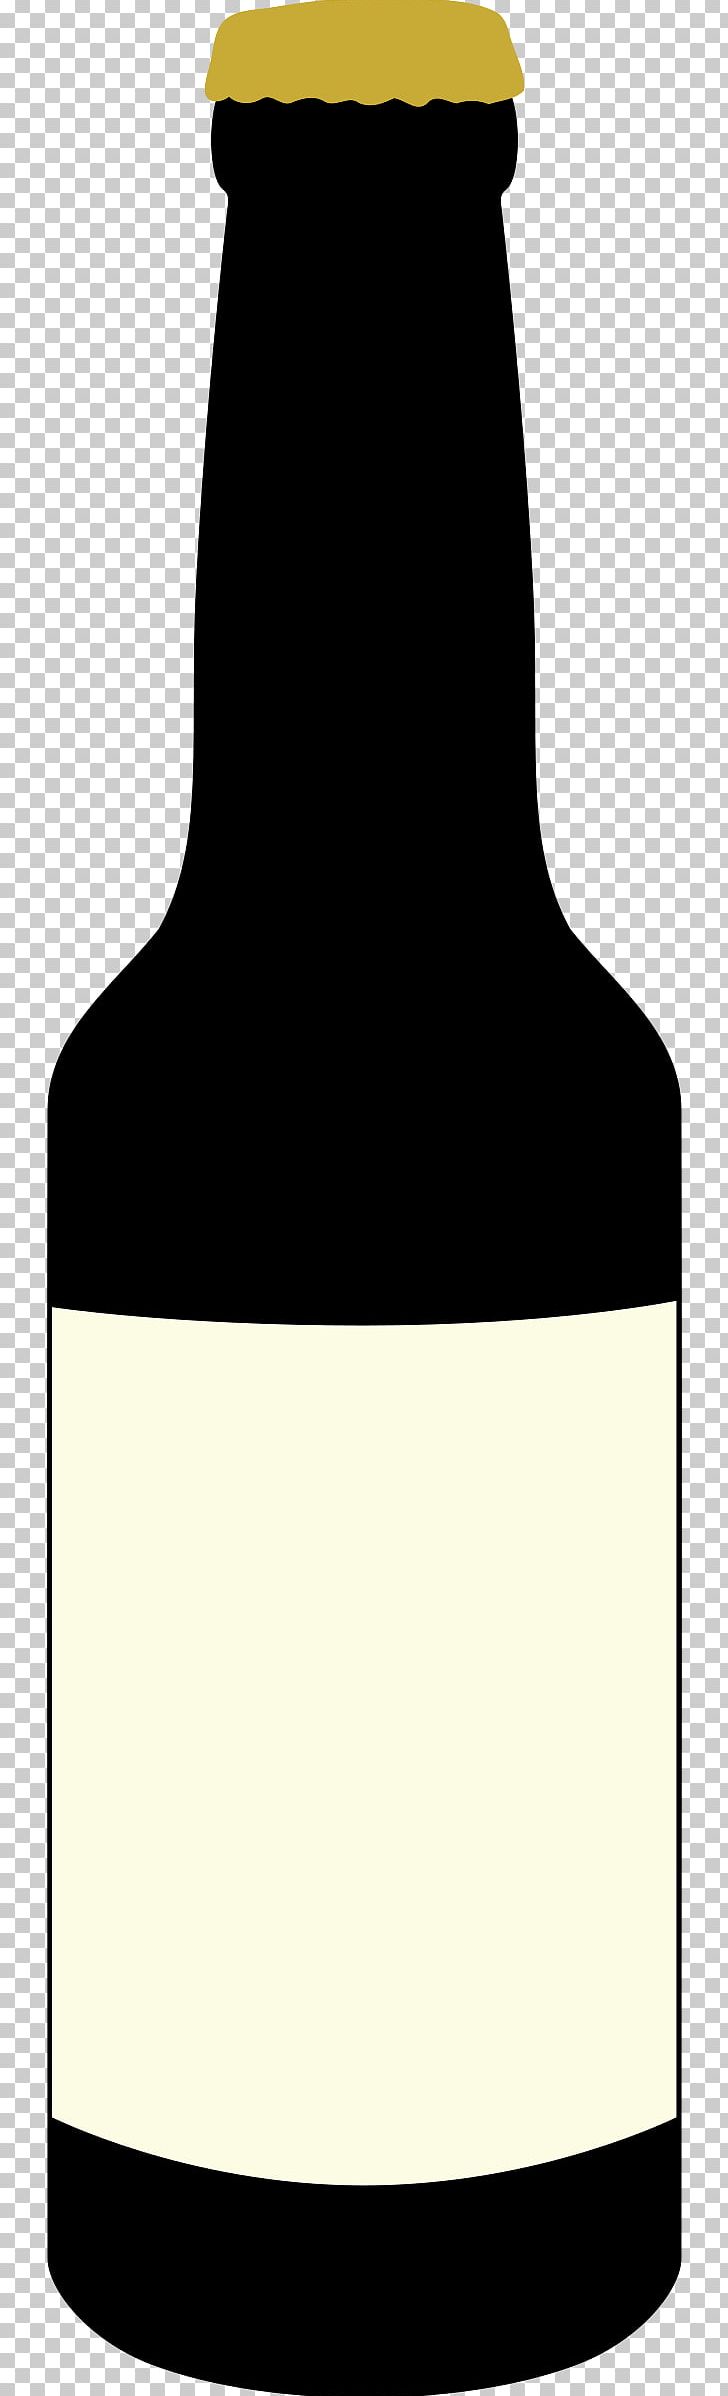 Beer Bottle Beer Bottle Glass Bottle PNG, Clipart, Beer, Beer Bottle, Black And White, Bottle, Drinkware Free PNG Download